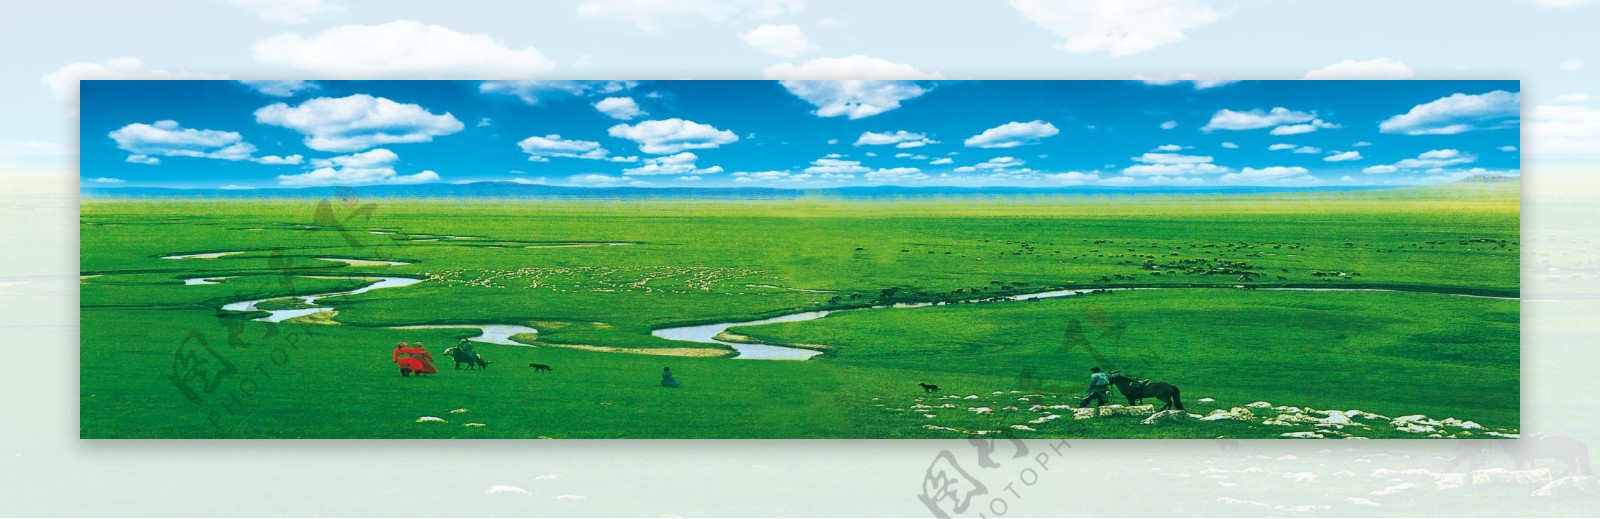 草原蒙古内蒙古草地绿地白云